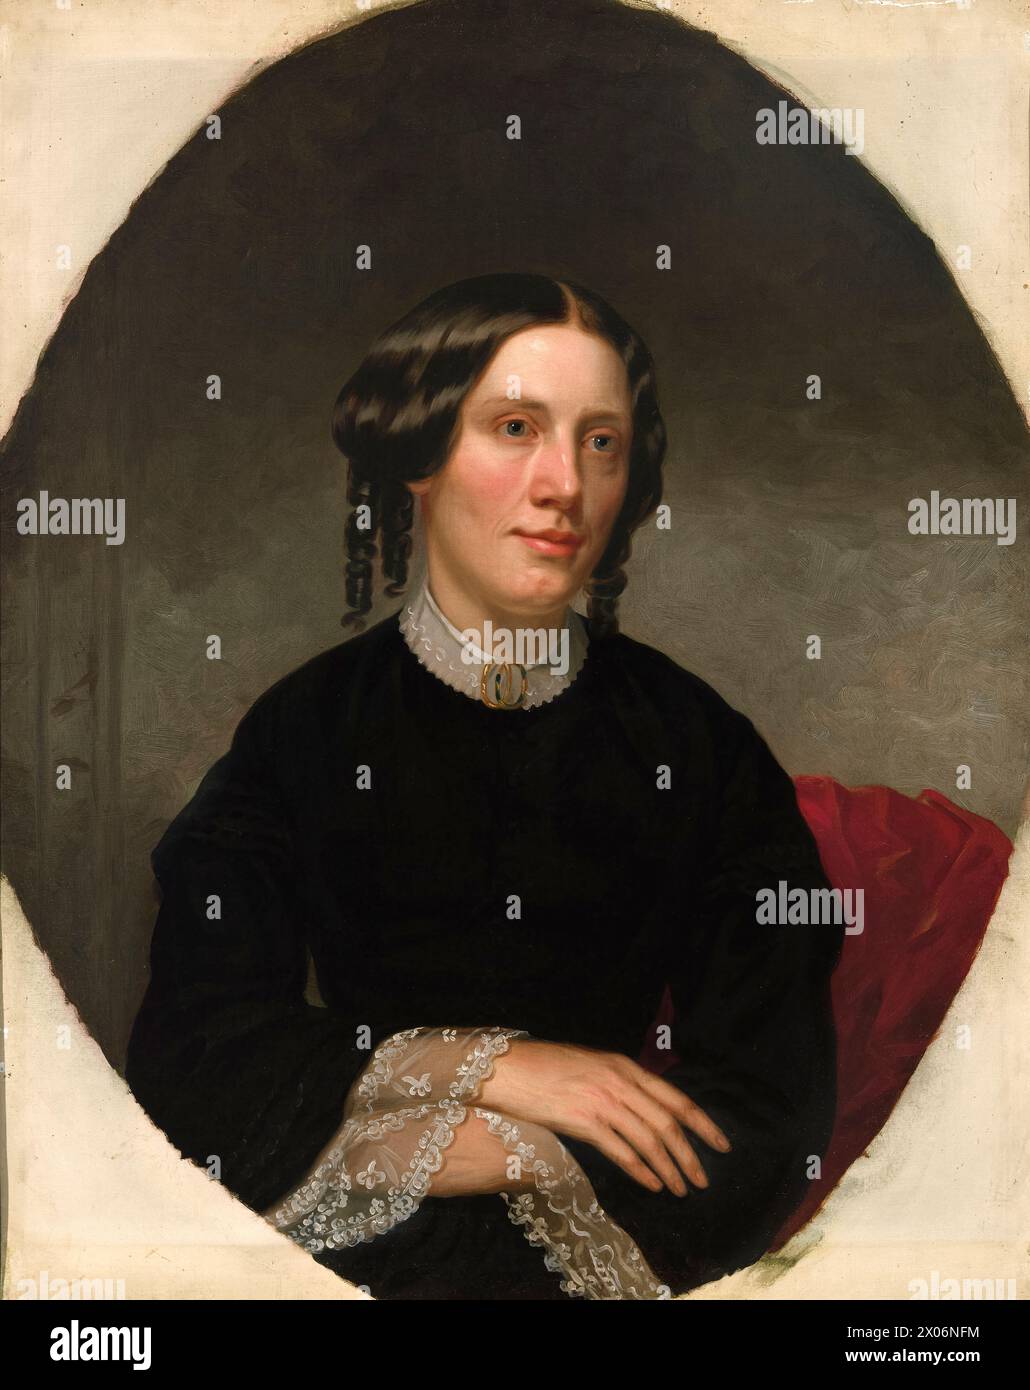 Retrato de Harriet Beecher Stowe (1811-1896) del artista estadounidense Alanson Fisher (1807-1884) pintado en 1853. Este retrato se encargó un año después de la publicación de la novela más vendida de Stowe 'Tío Tom's Cabin' que hizo mucho para progresar la causa abolicionista en la década de 1850 Foto de stock